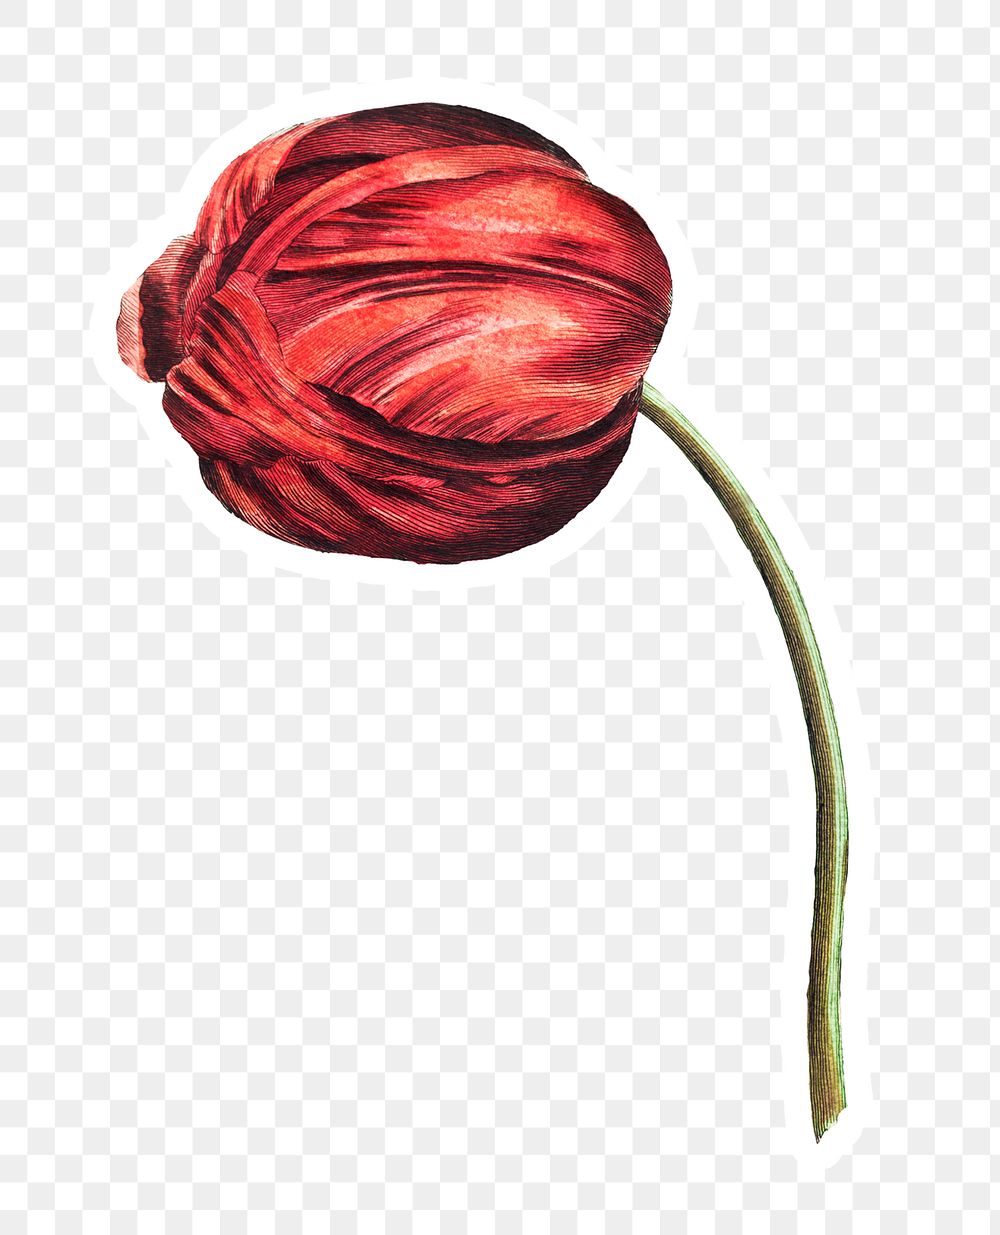 Vintage red tulip flower sticker with white border